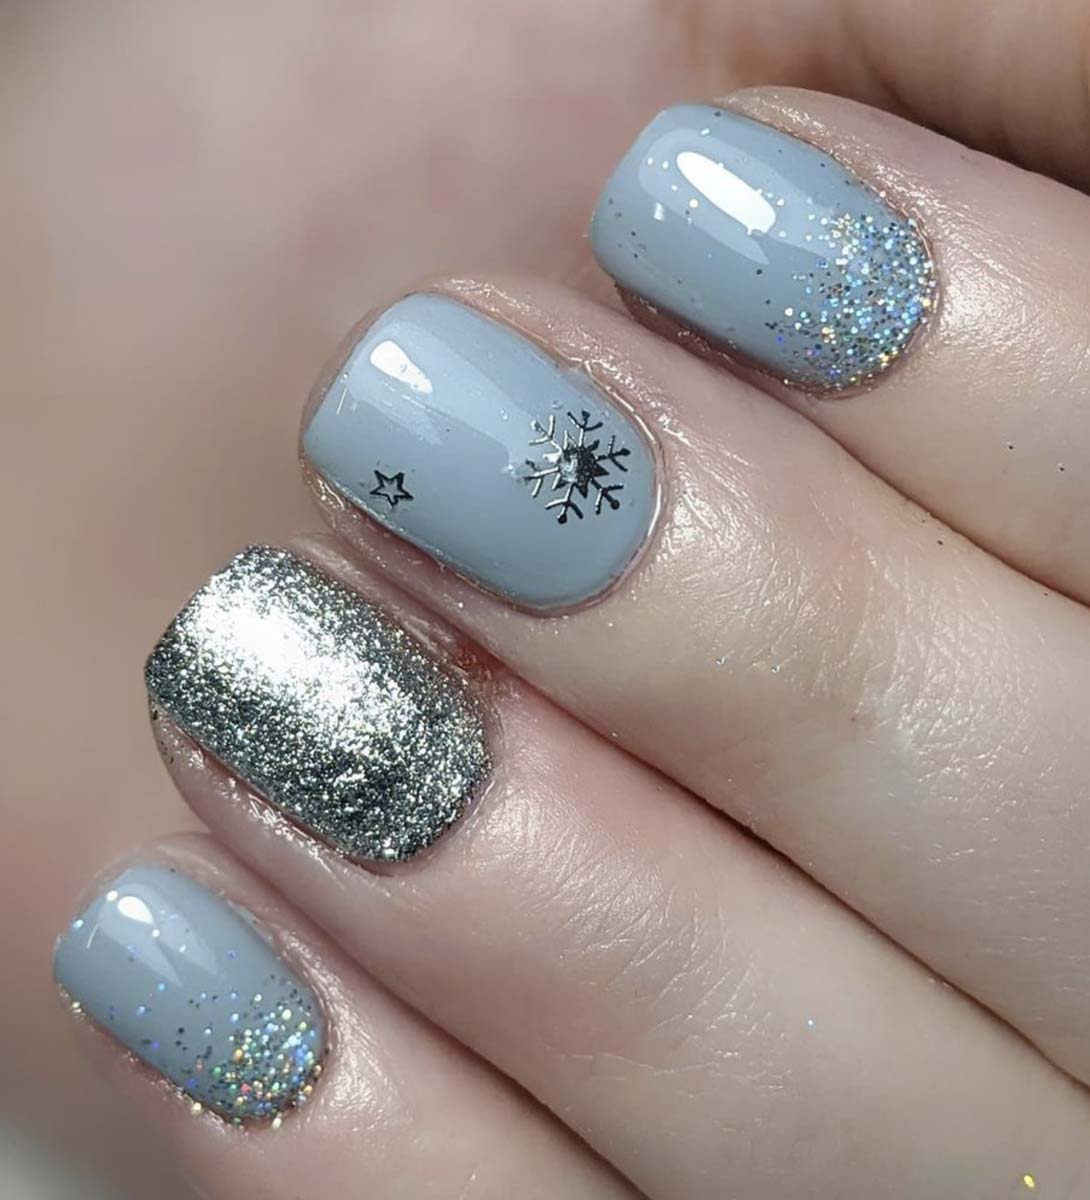 unghie natalizie azzurro ghiaccio, glitter e fiocchi di neve.